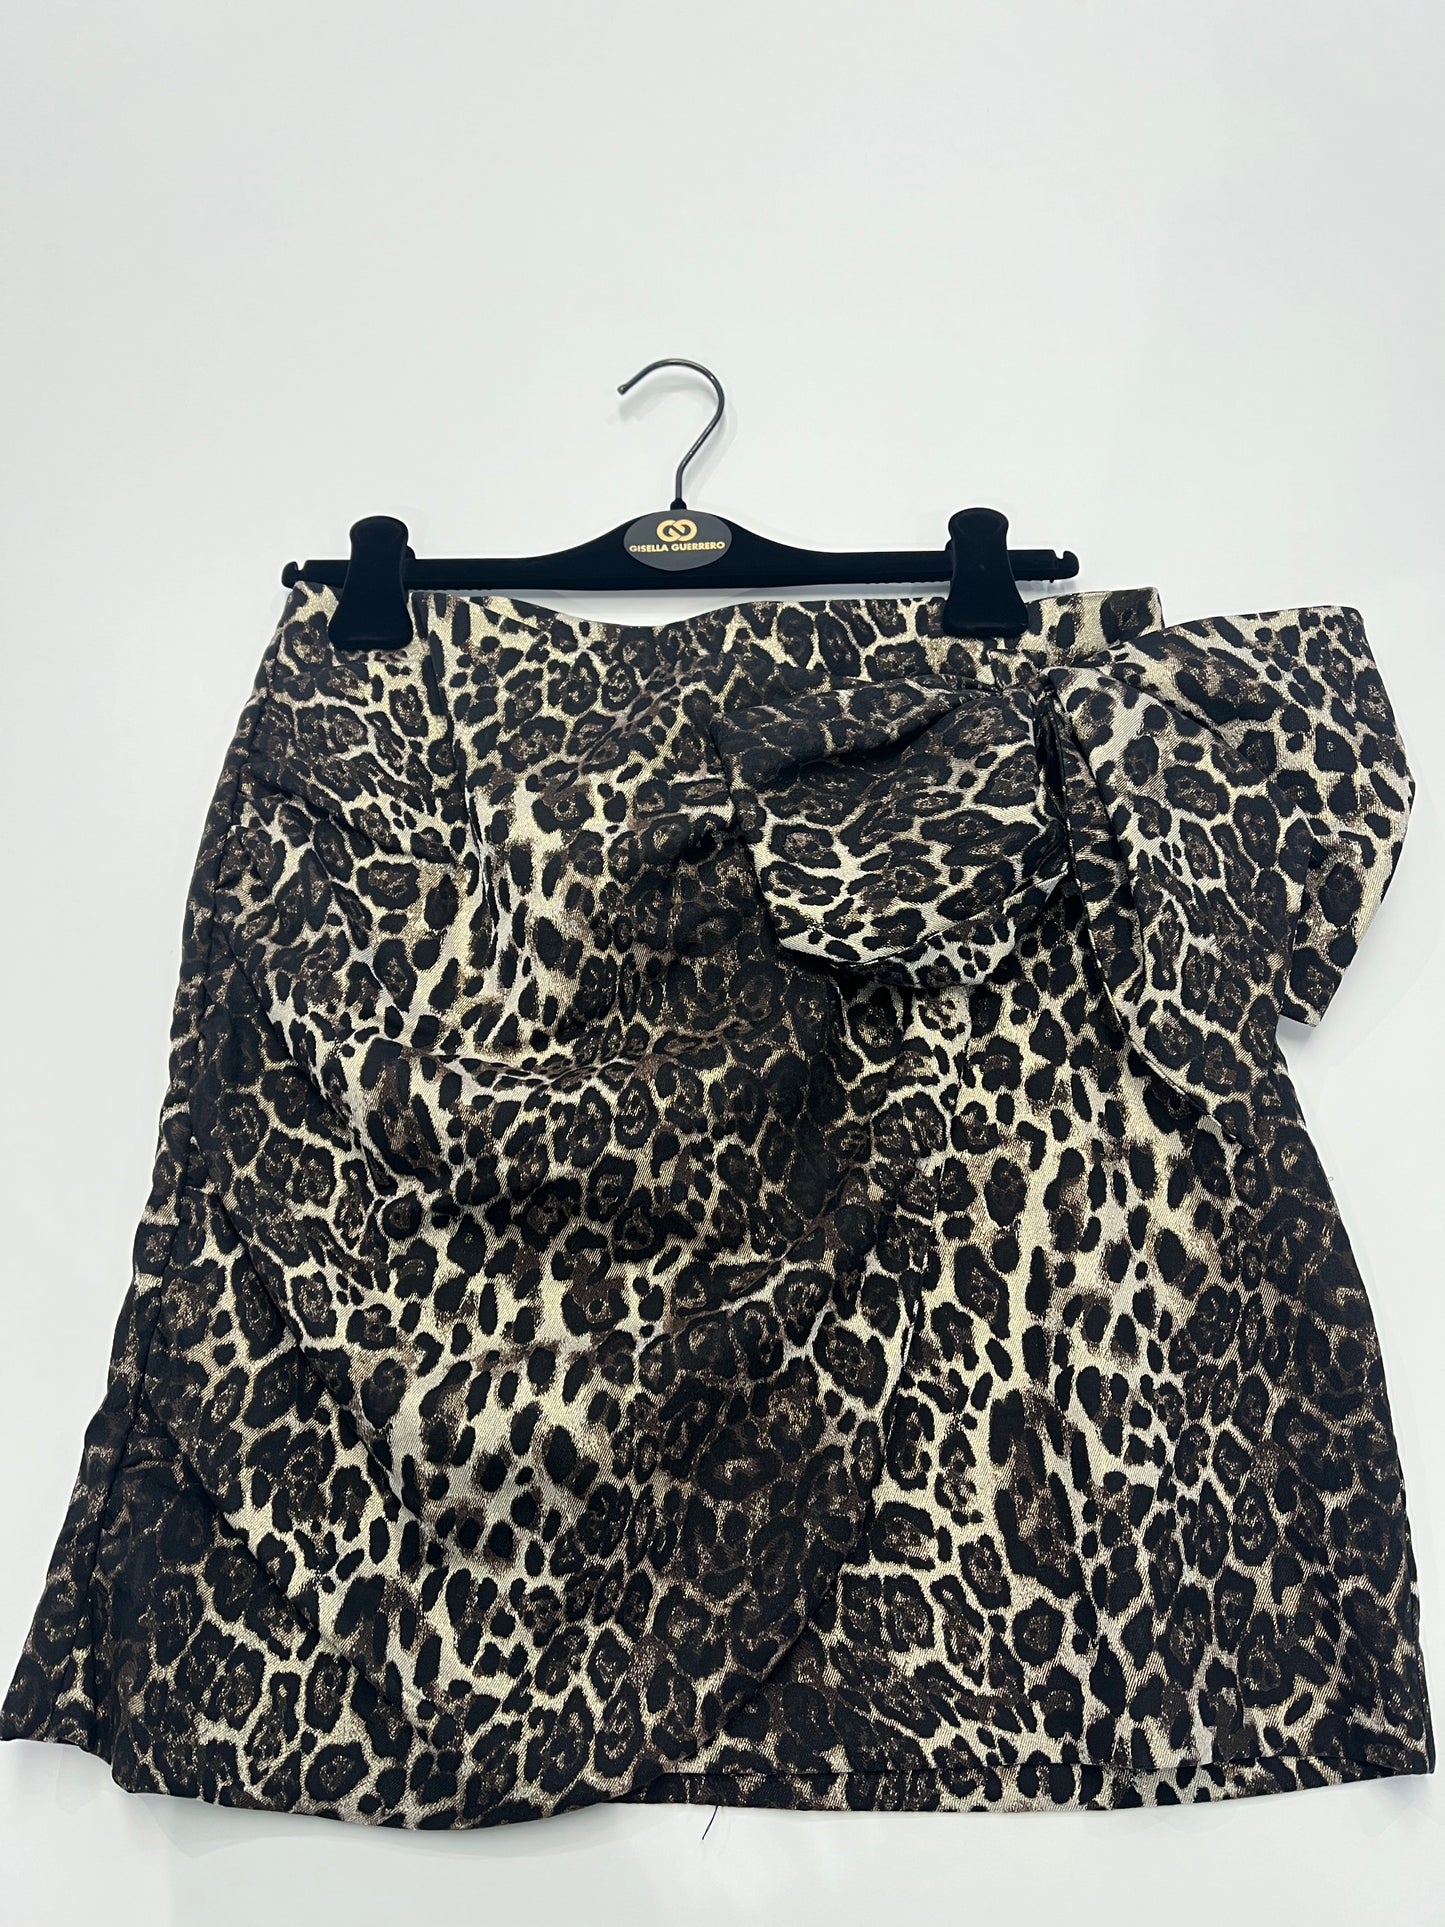 GG021: Animal Print Skirt